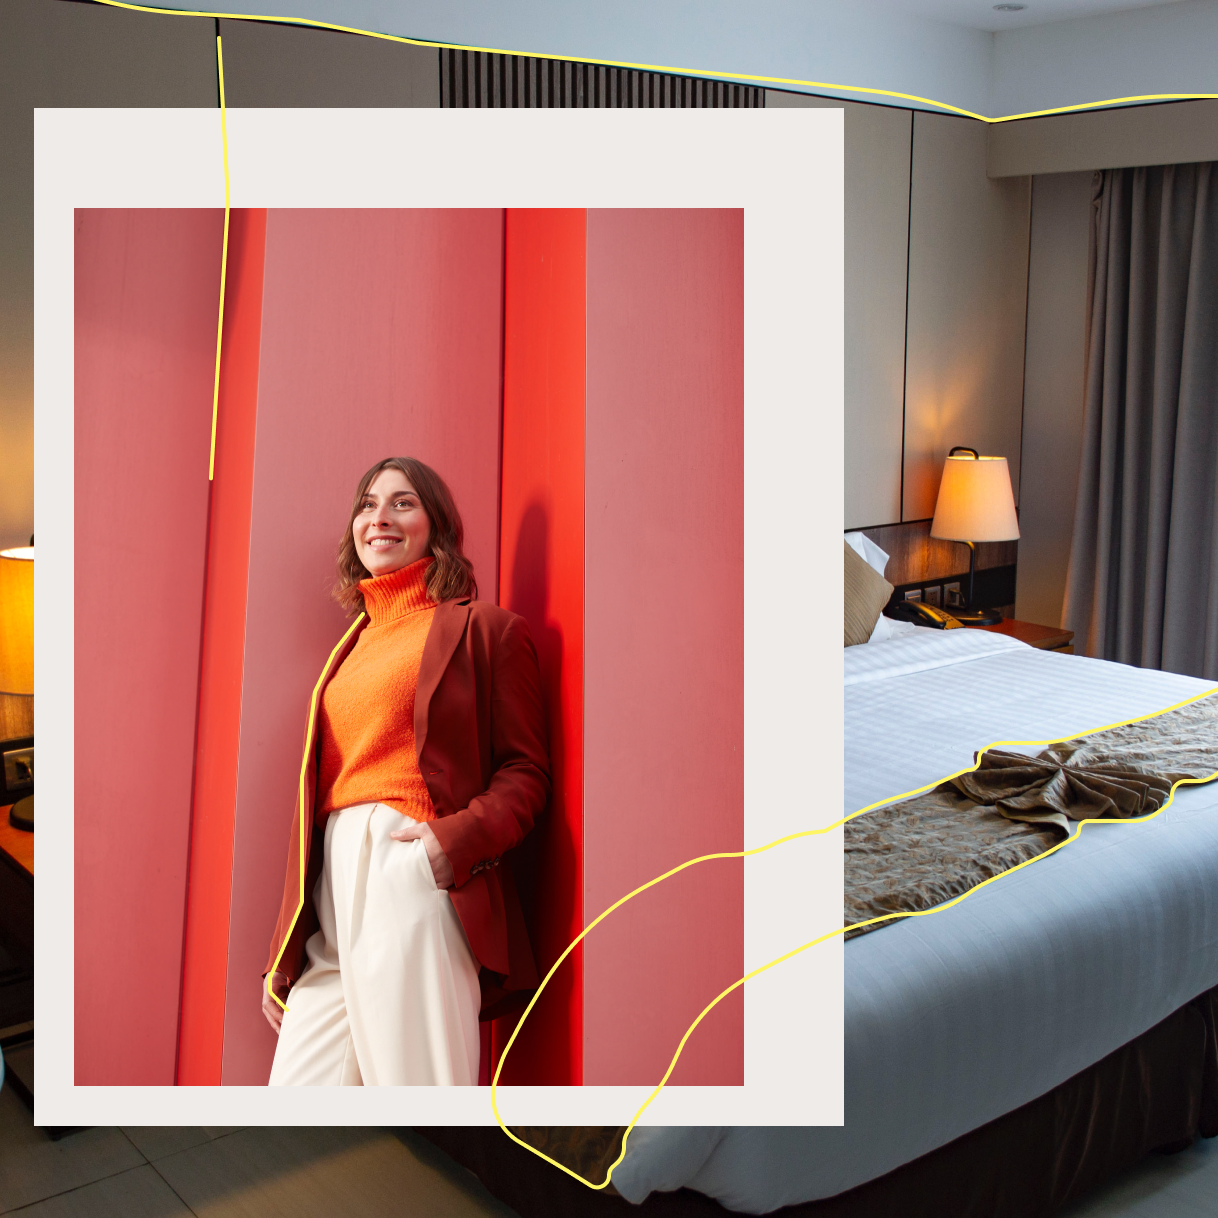 Frau vor roter Wand im Hintergrund Hotelzimmer